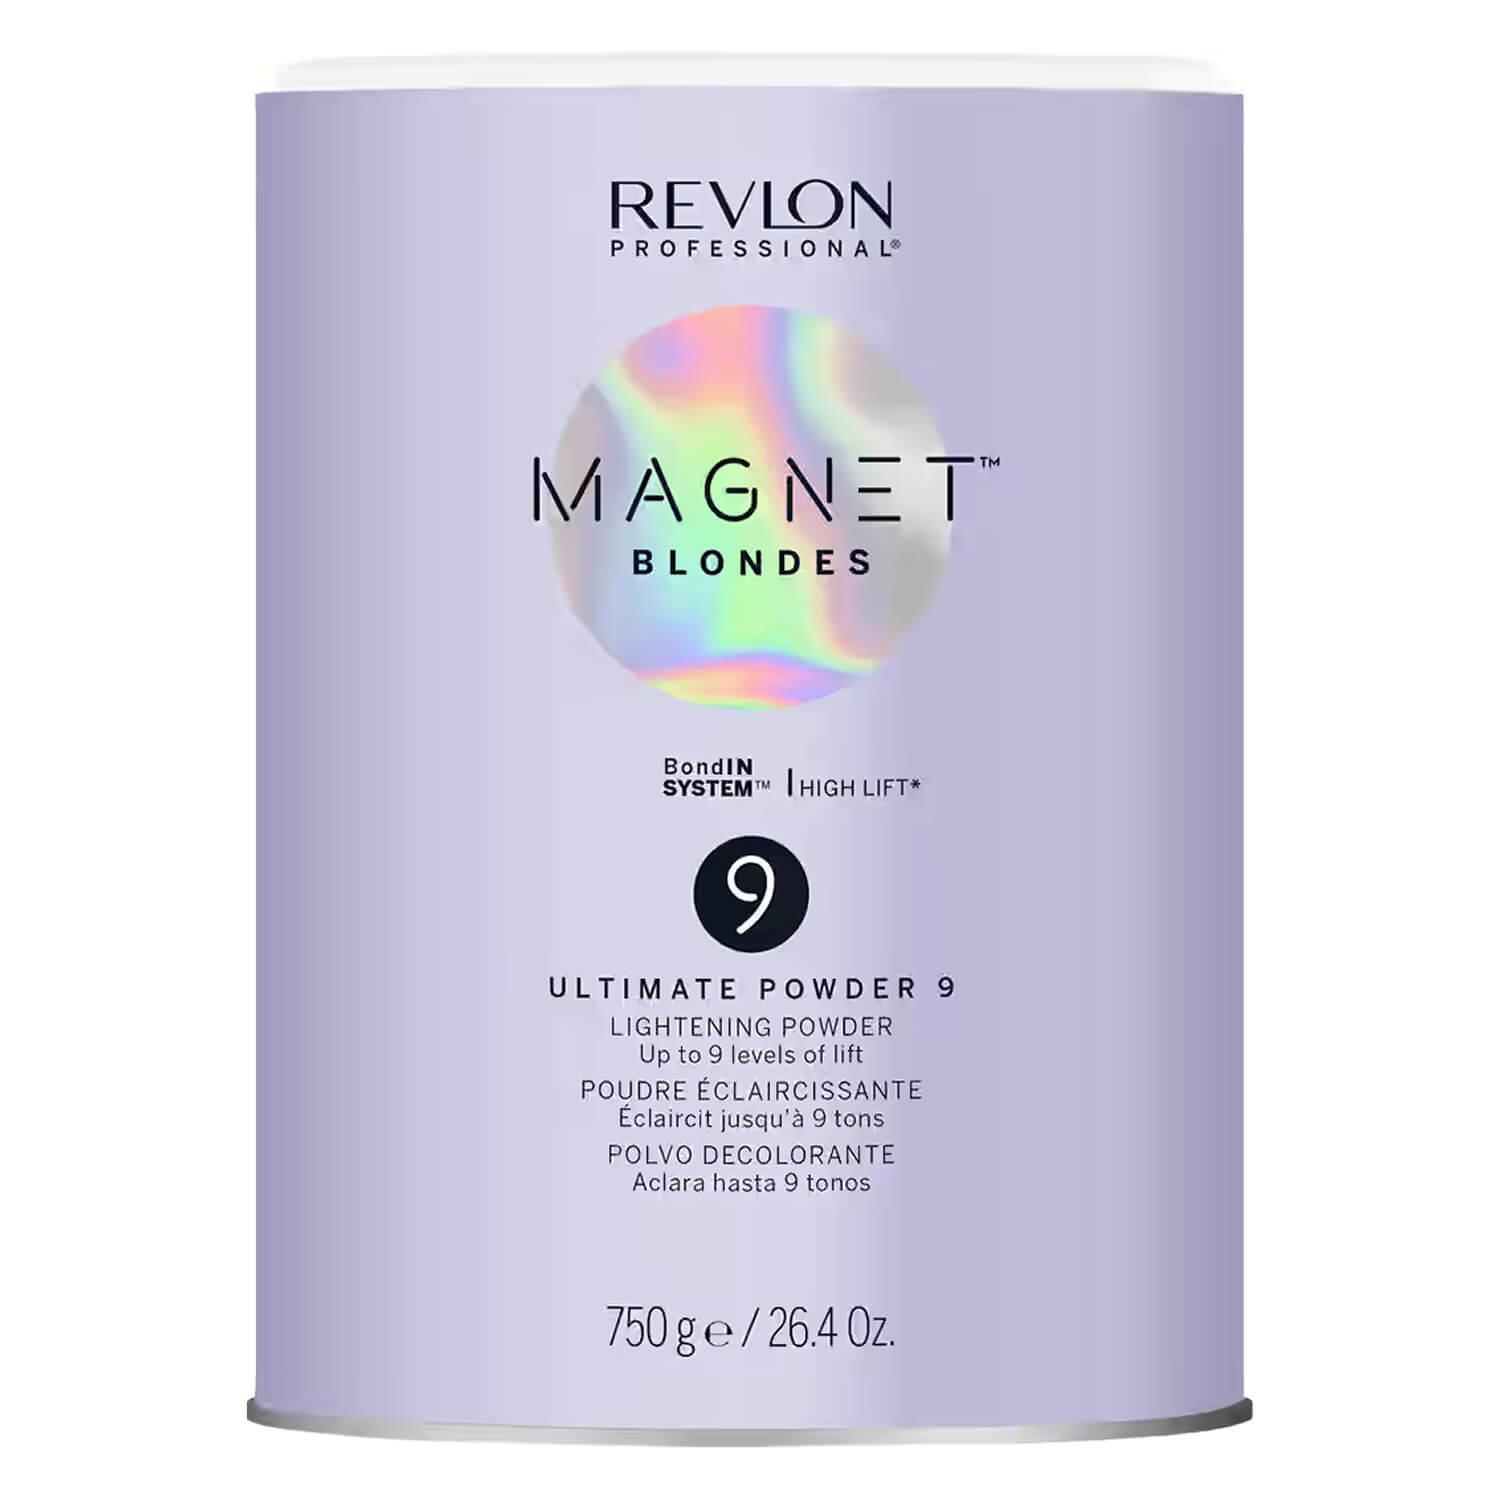 Magnet Blondes Ultimate Powder 9